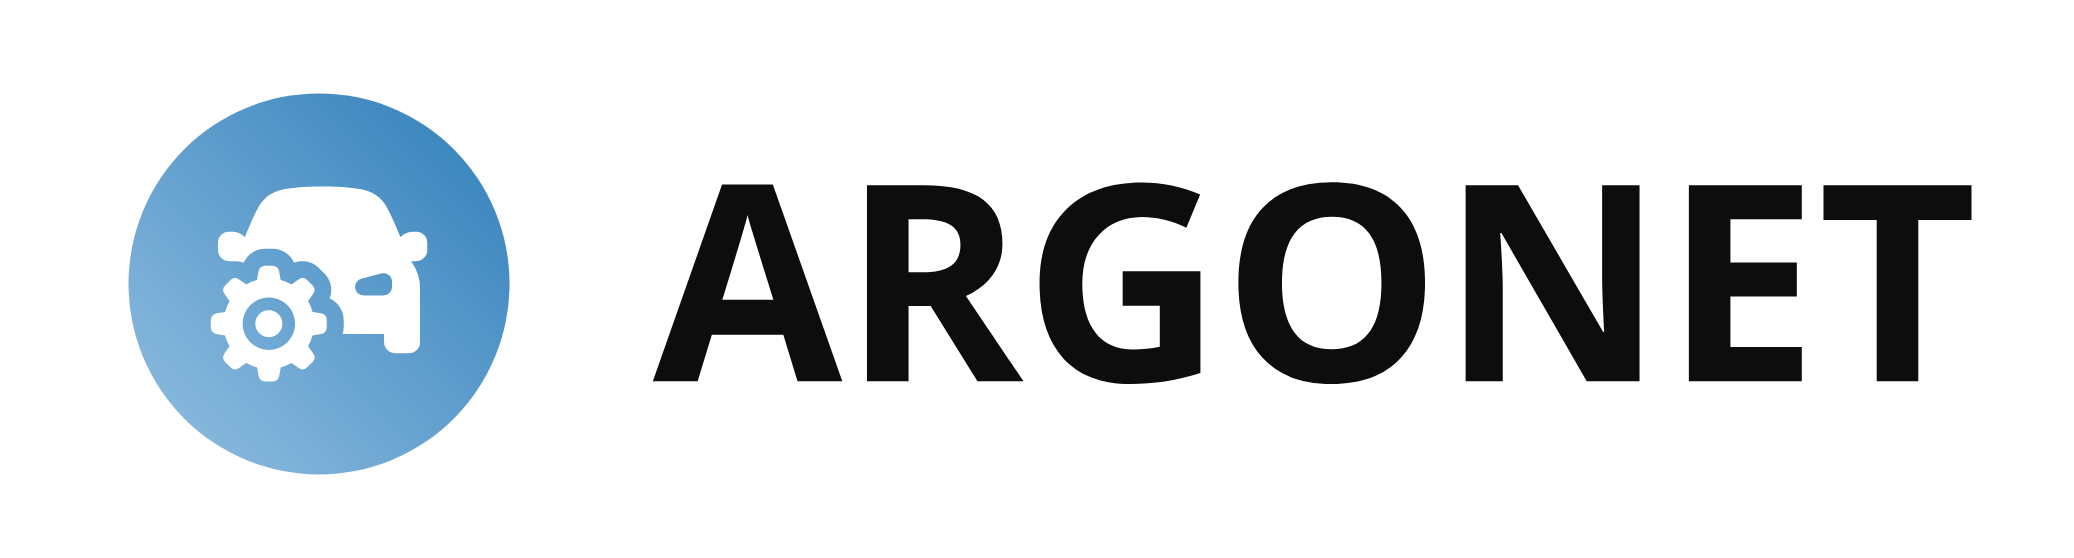 Argonet Oy